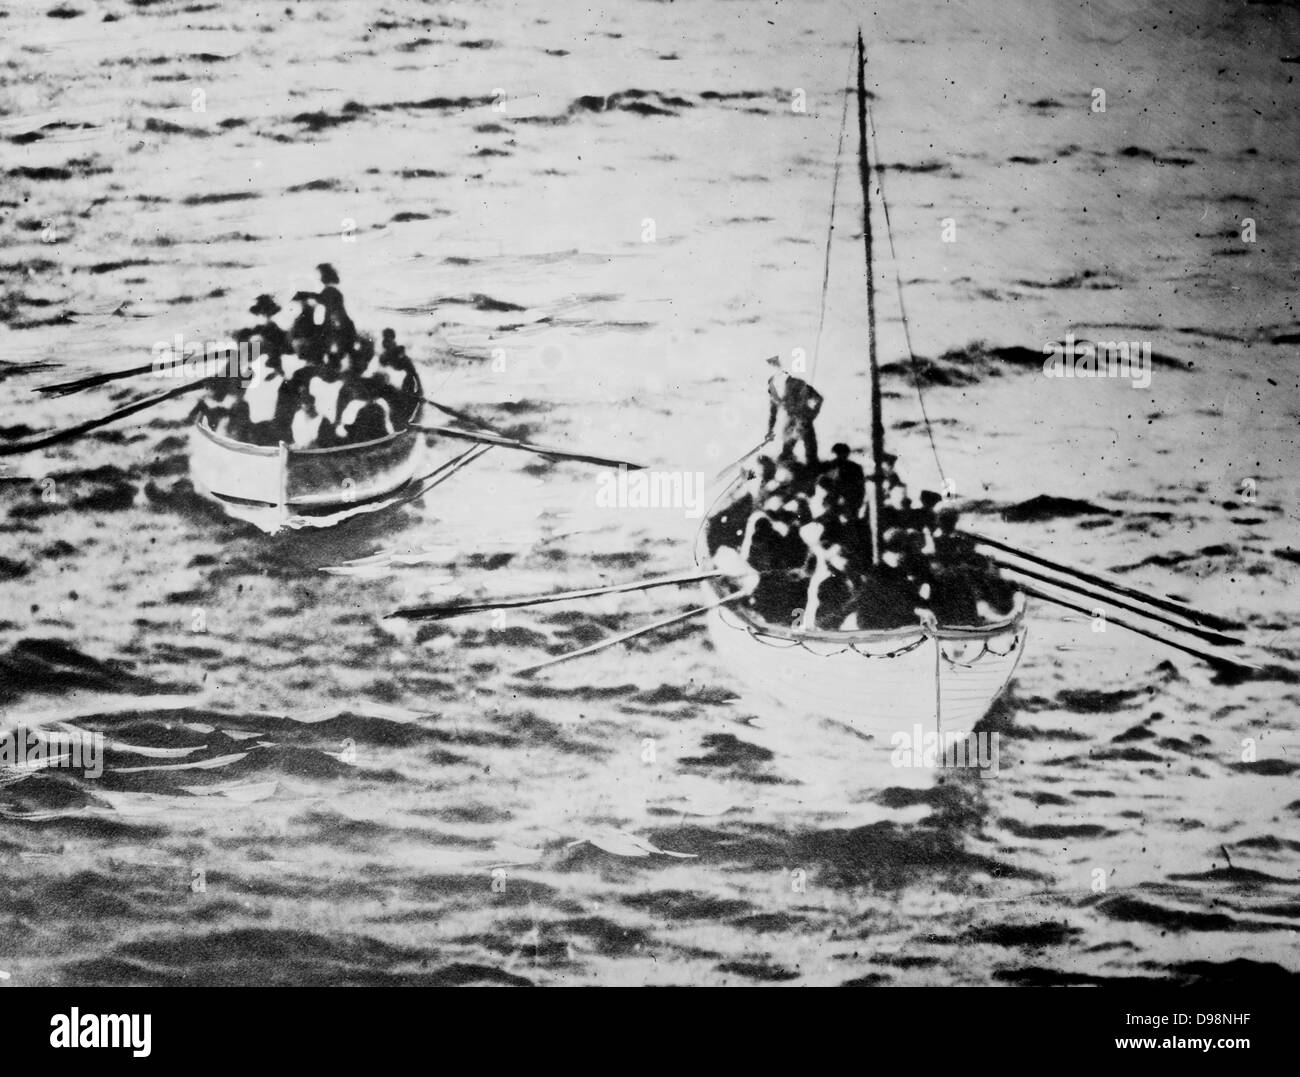 Perte de la White Star Line de classe olympique du RMS Titanic qui a heurté un iceberg le 12 avril 1912 pour son voyage inaugural de Southampton à New York. Sauvetage du Titanic sur leur chemin vers le Carpathia. Plus de 1 500 vies perdues. Disaster Banque D'Images